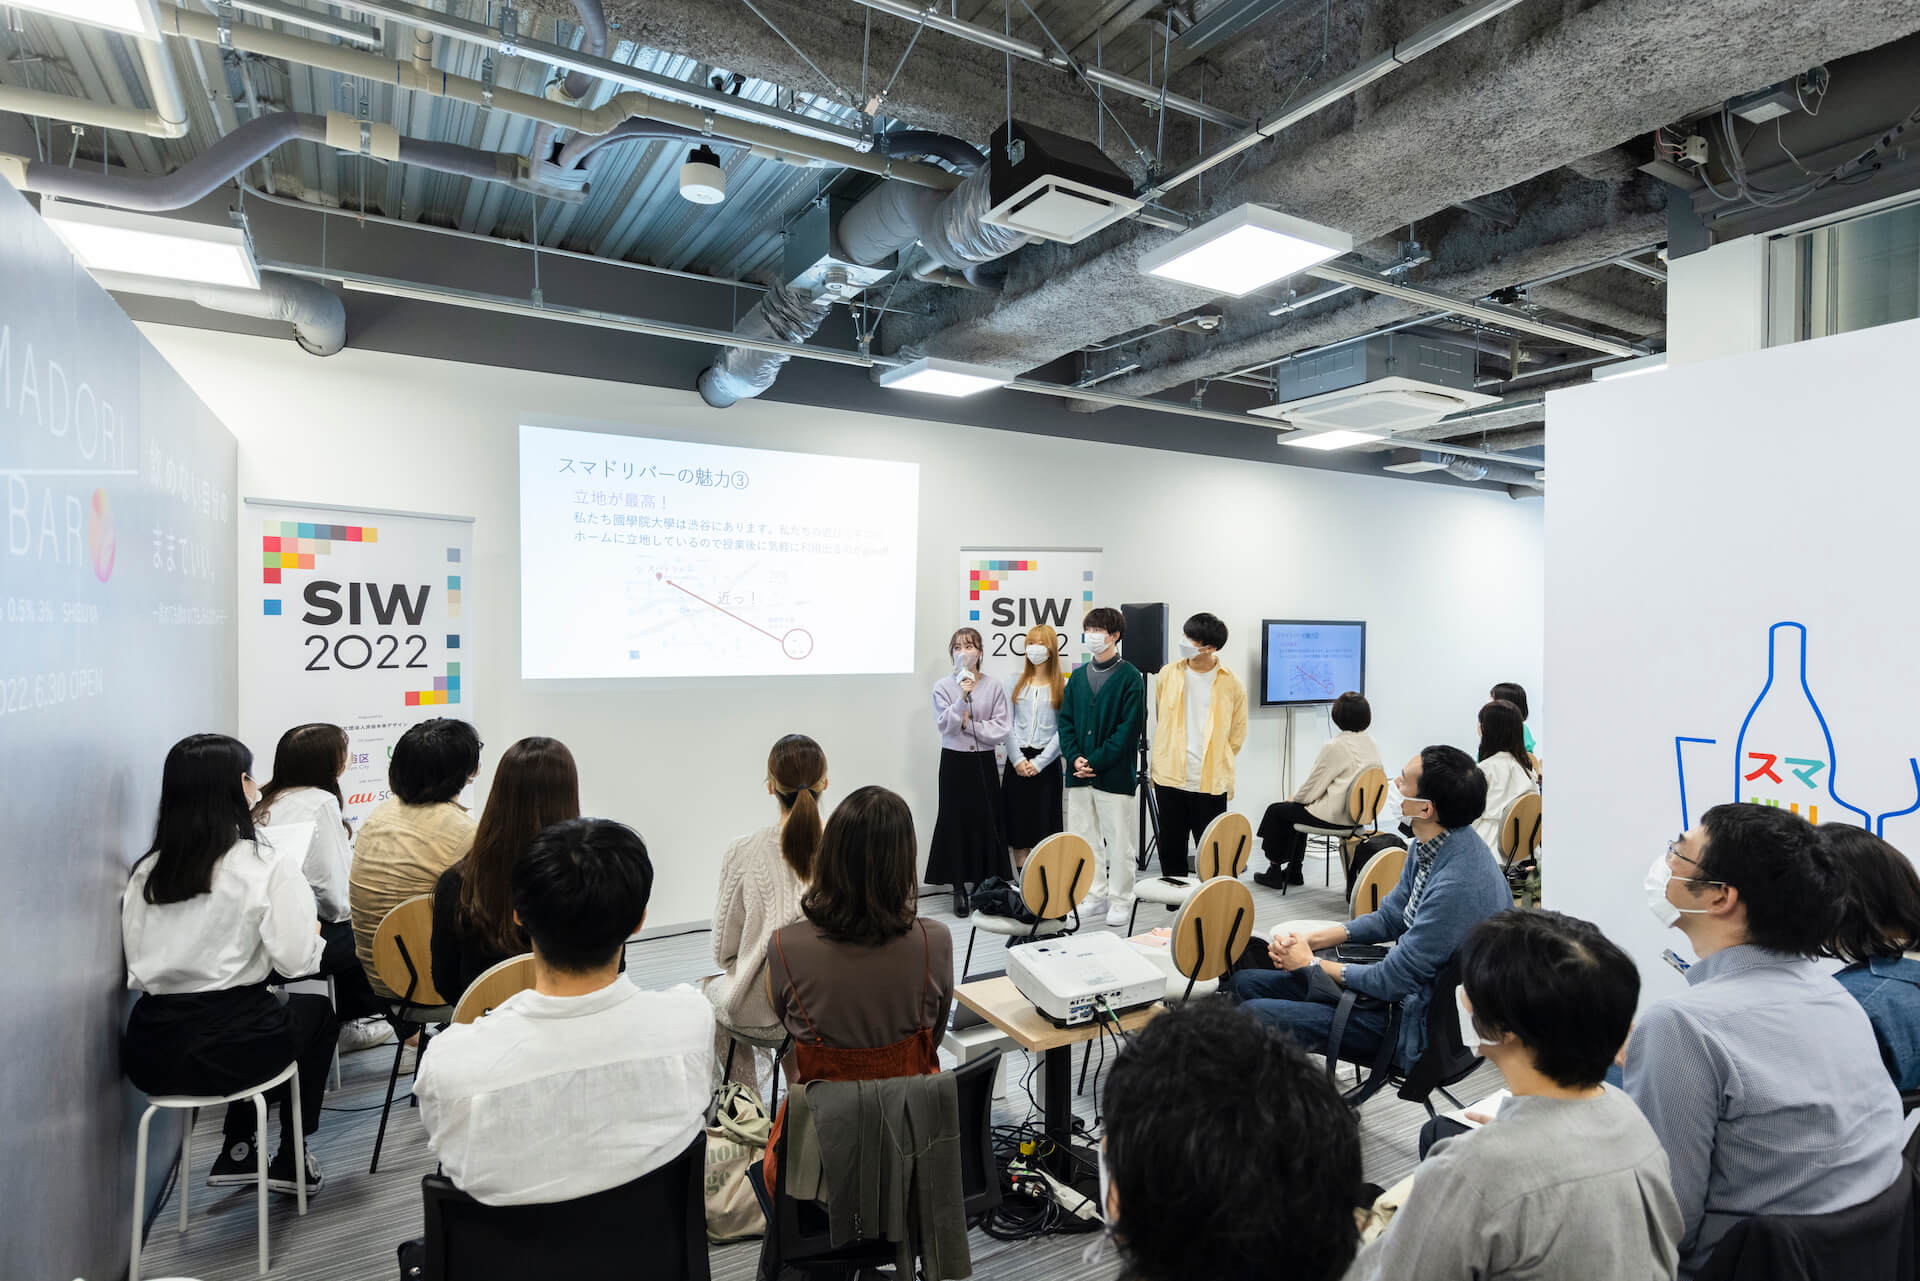 成田 悠輔、ryuchellなど265名が登壇した80プログラムのアーカイブを無料公開中！渋谷アイデア会議「SIW2022」が延べ13万人が参加で閉幕 culture221116-social-innovation-week-shibuya-05